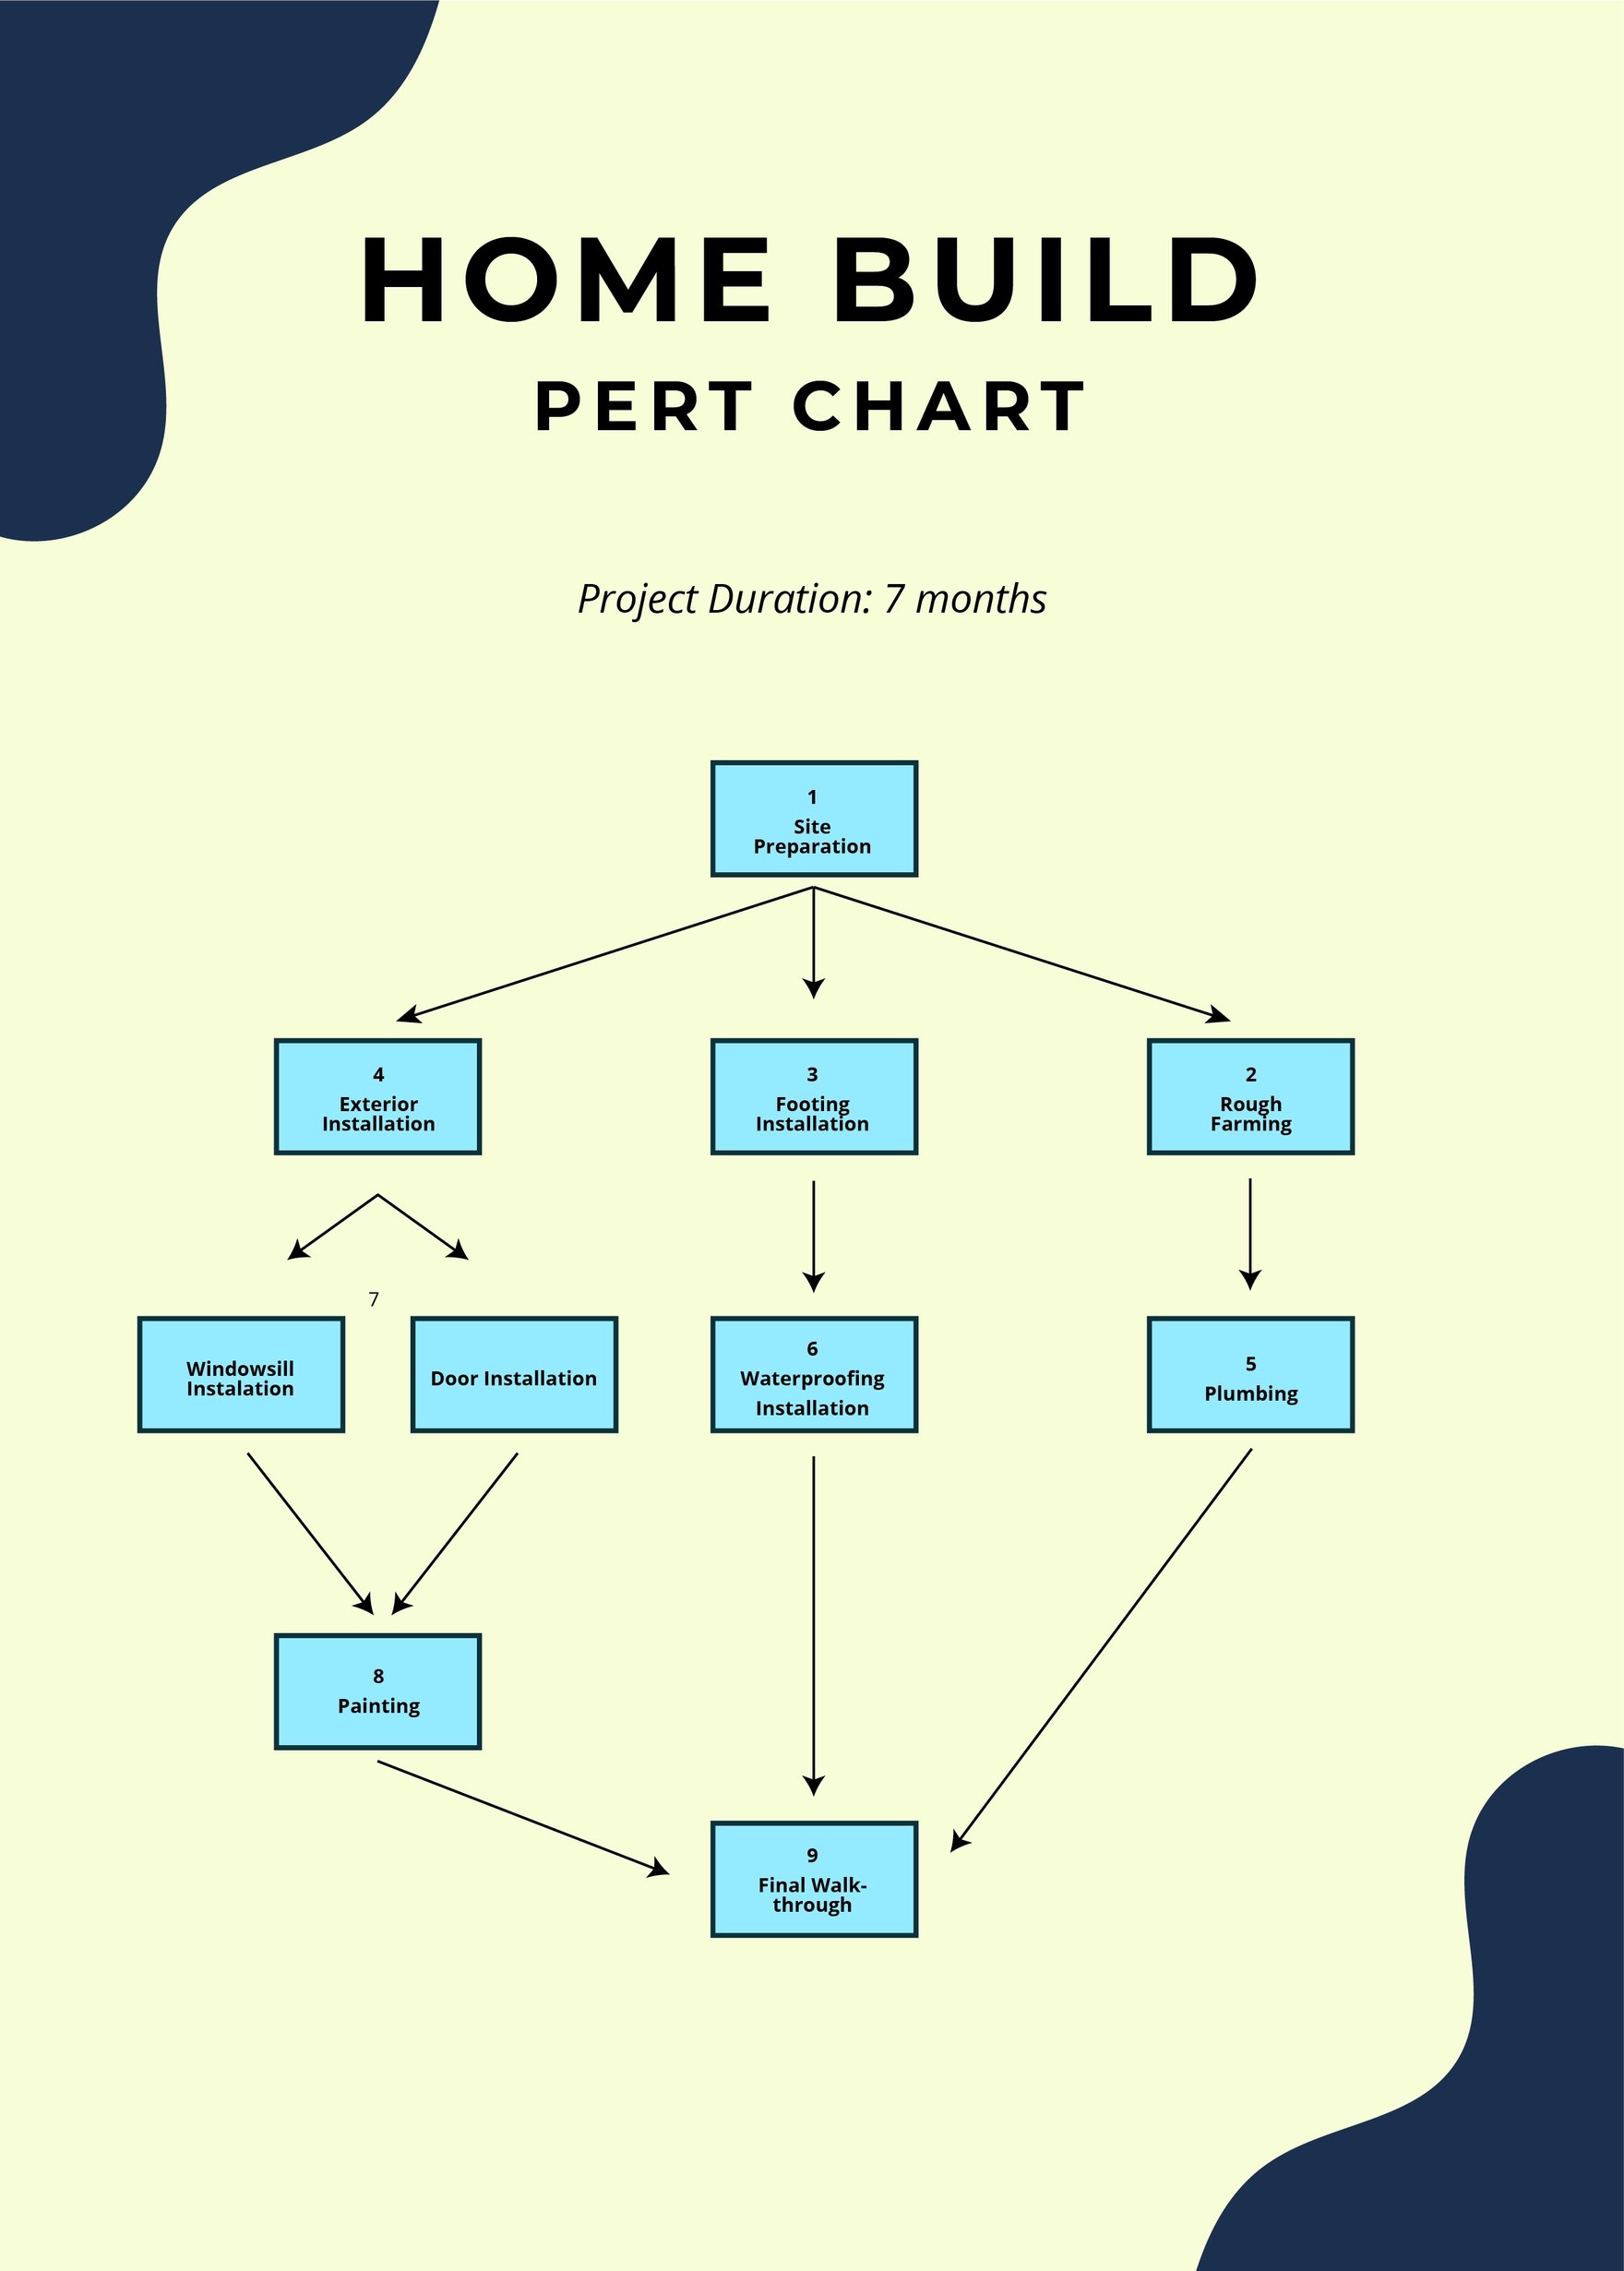 Home Build PERT Chart